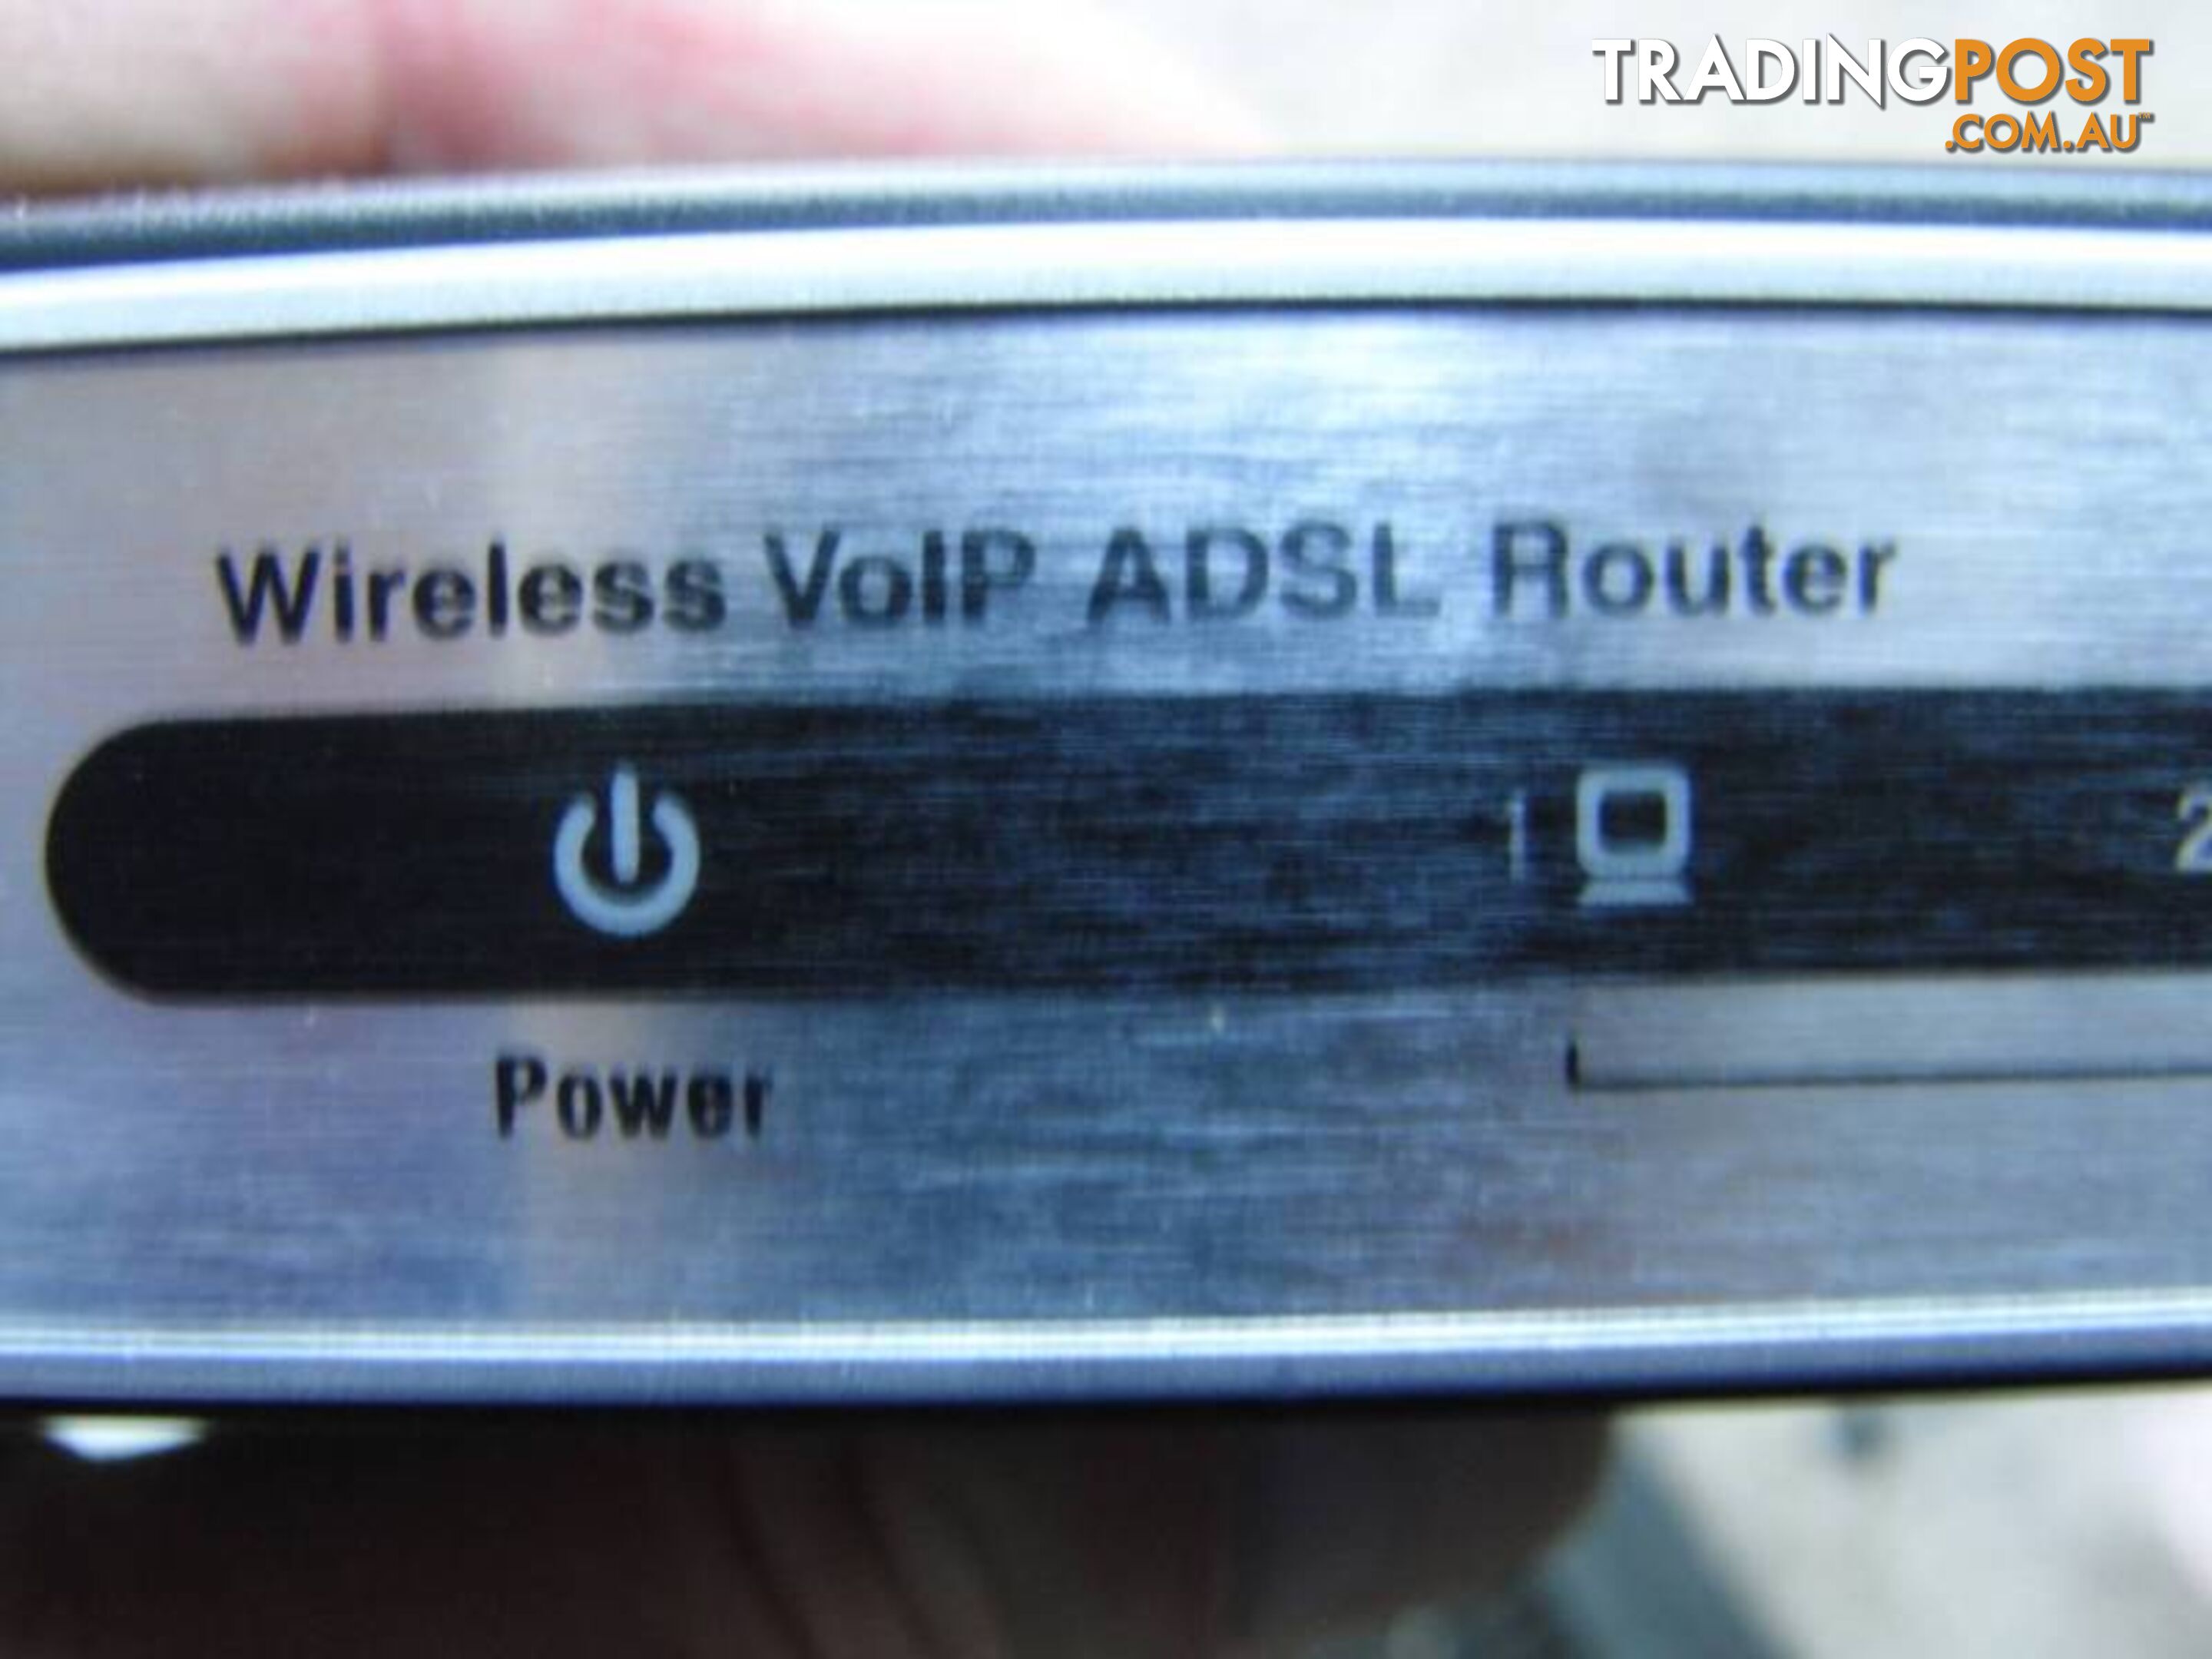 D-Link DVA-G3670B Wireless G ADSL2+ VoIP Modem & Router Switch